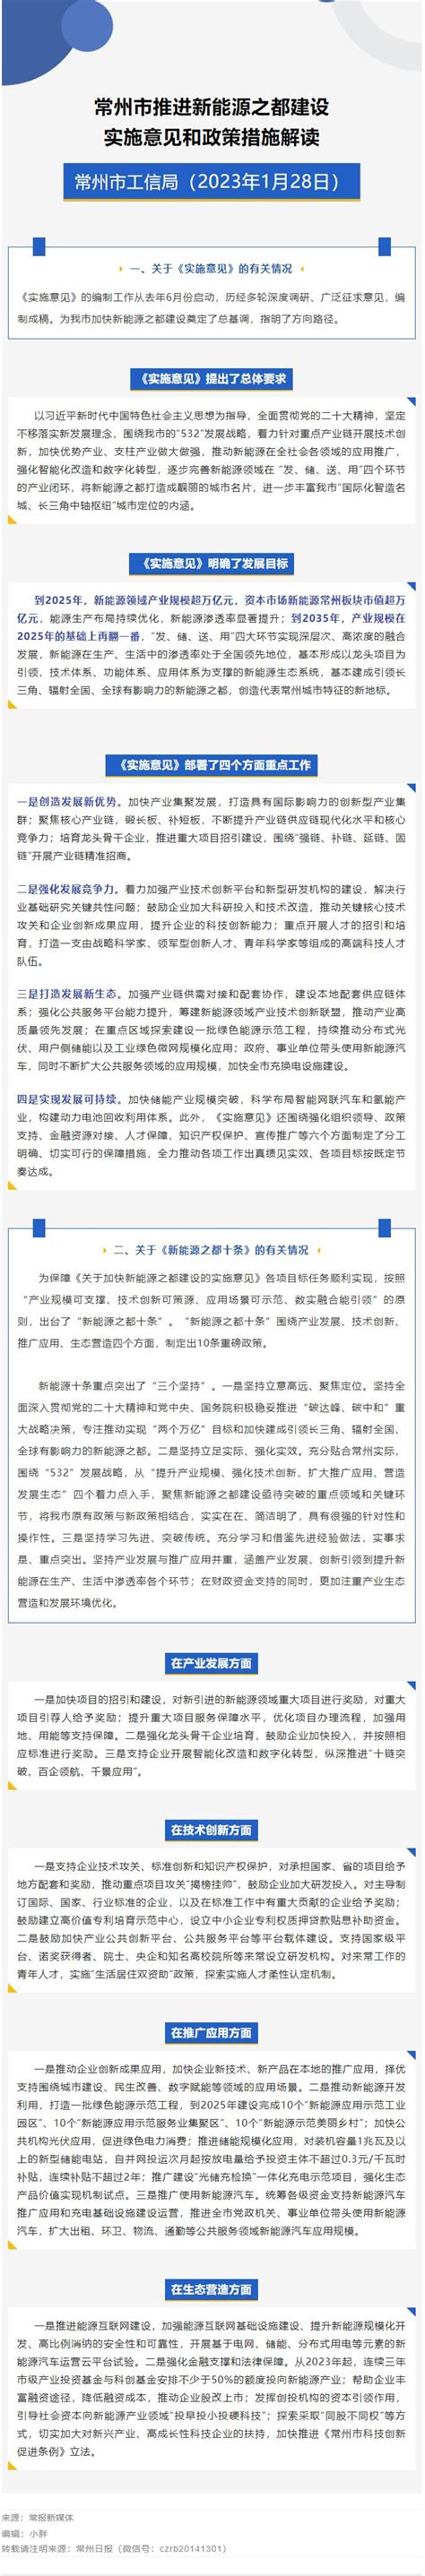 《关于更加有效发挥统计监督职能作用的意见》图片解读 -吴川市人民政府门户网站